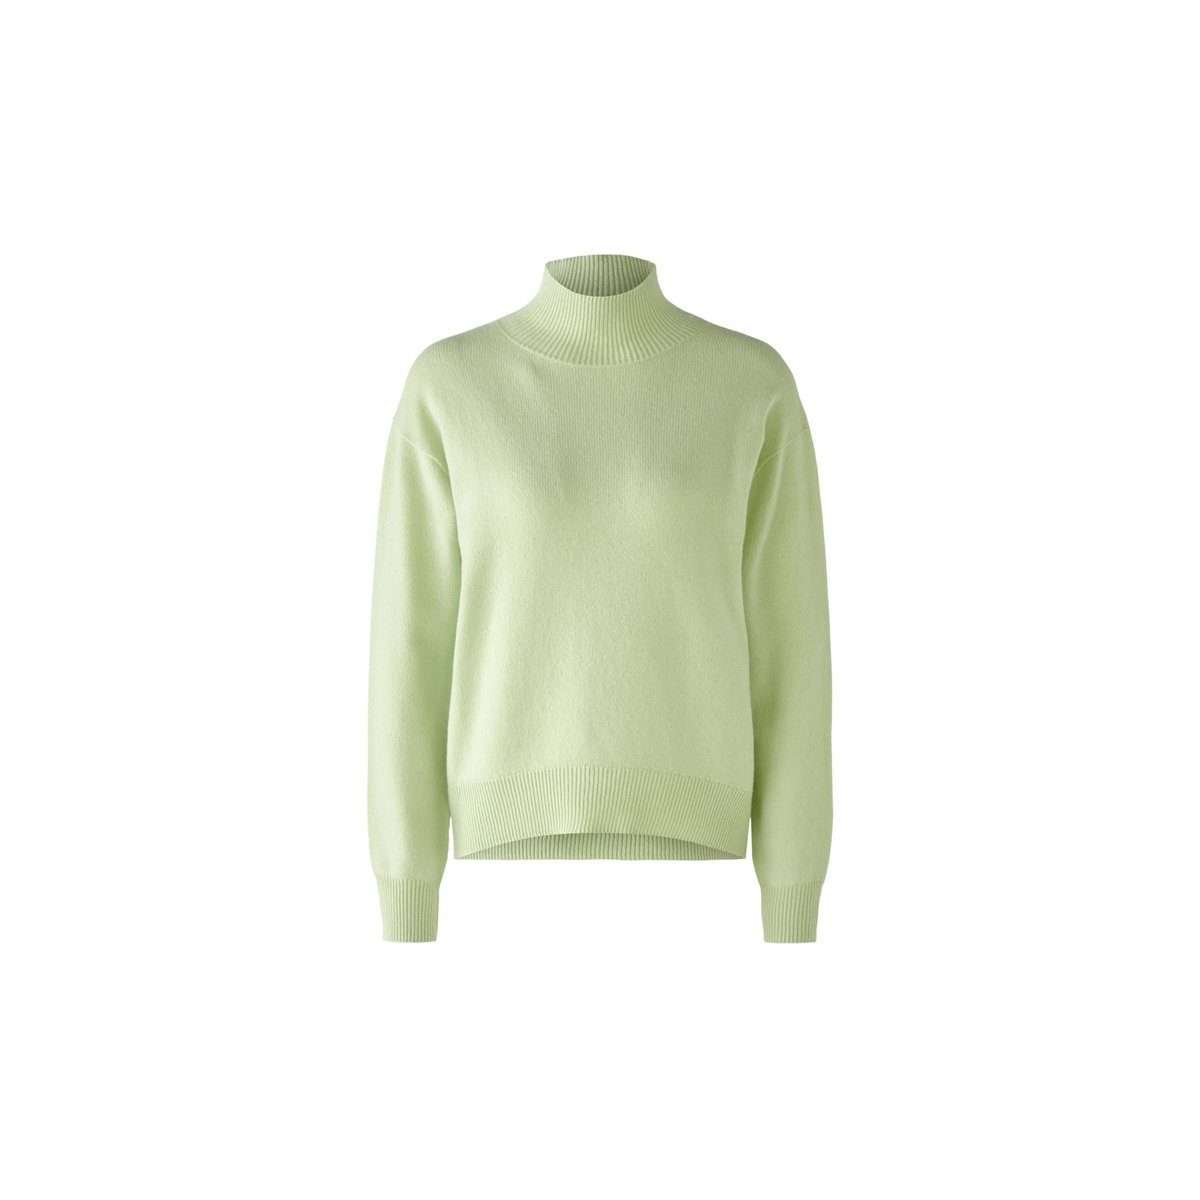 Вязаный свитер светло-зеленый (1 шт.)